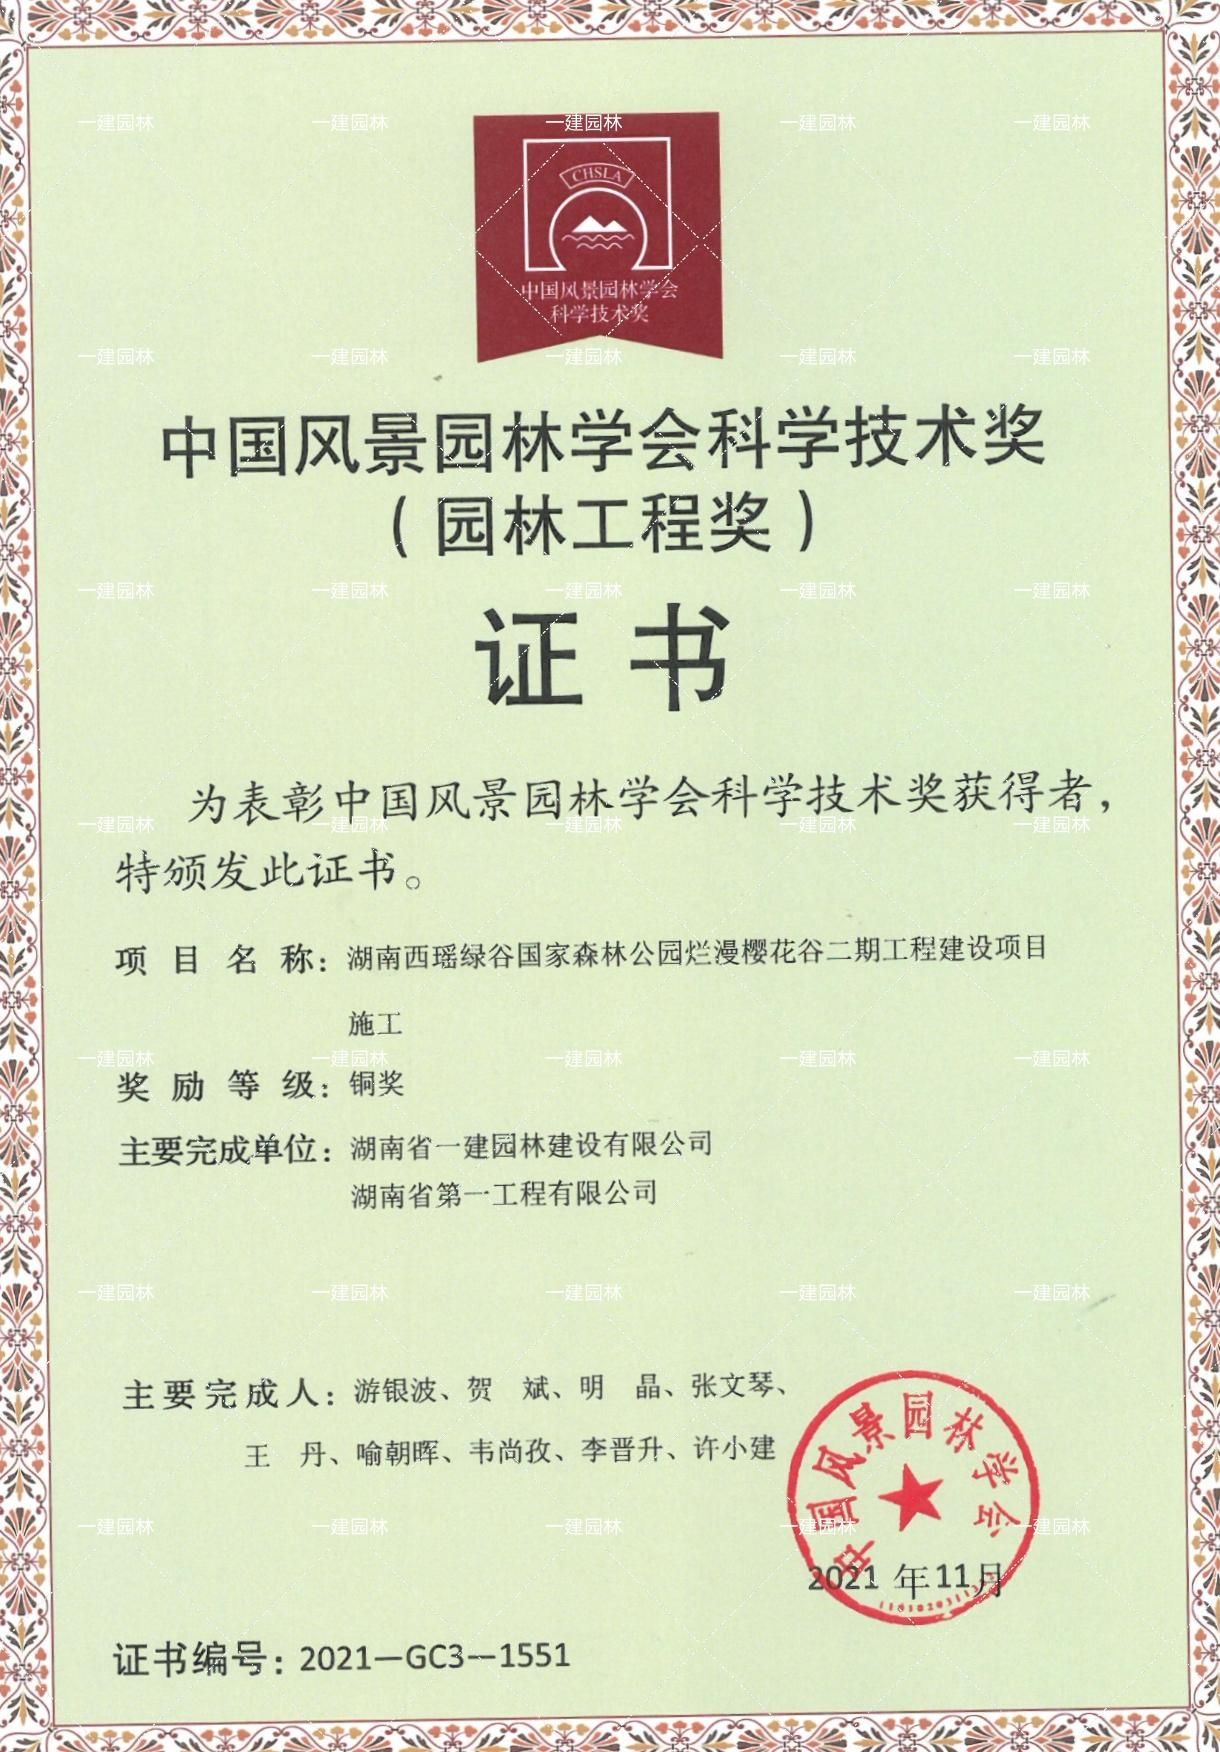 中国风景园林学会科学技术奖铜奖